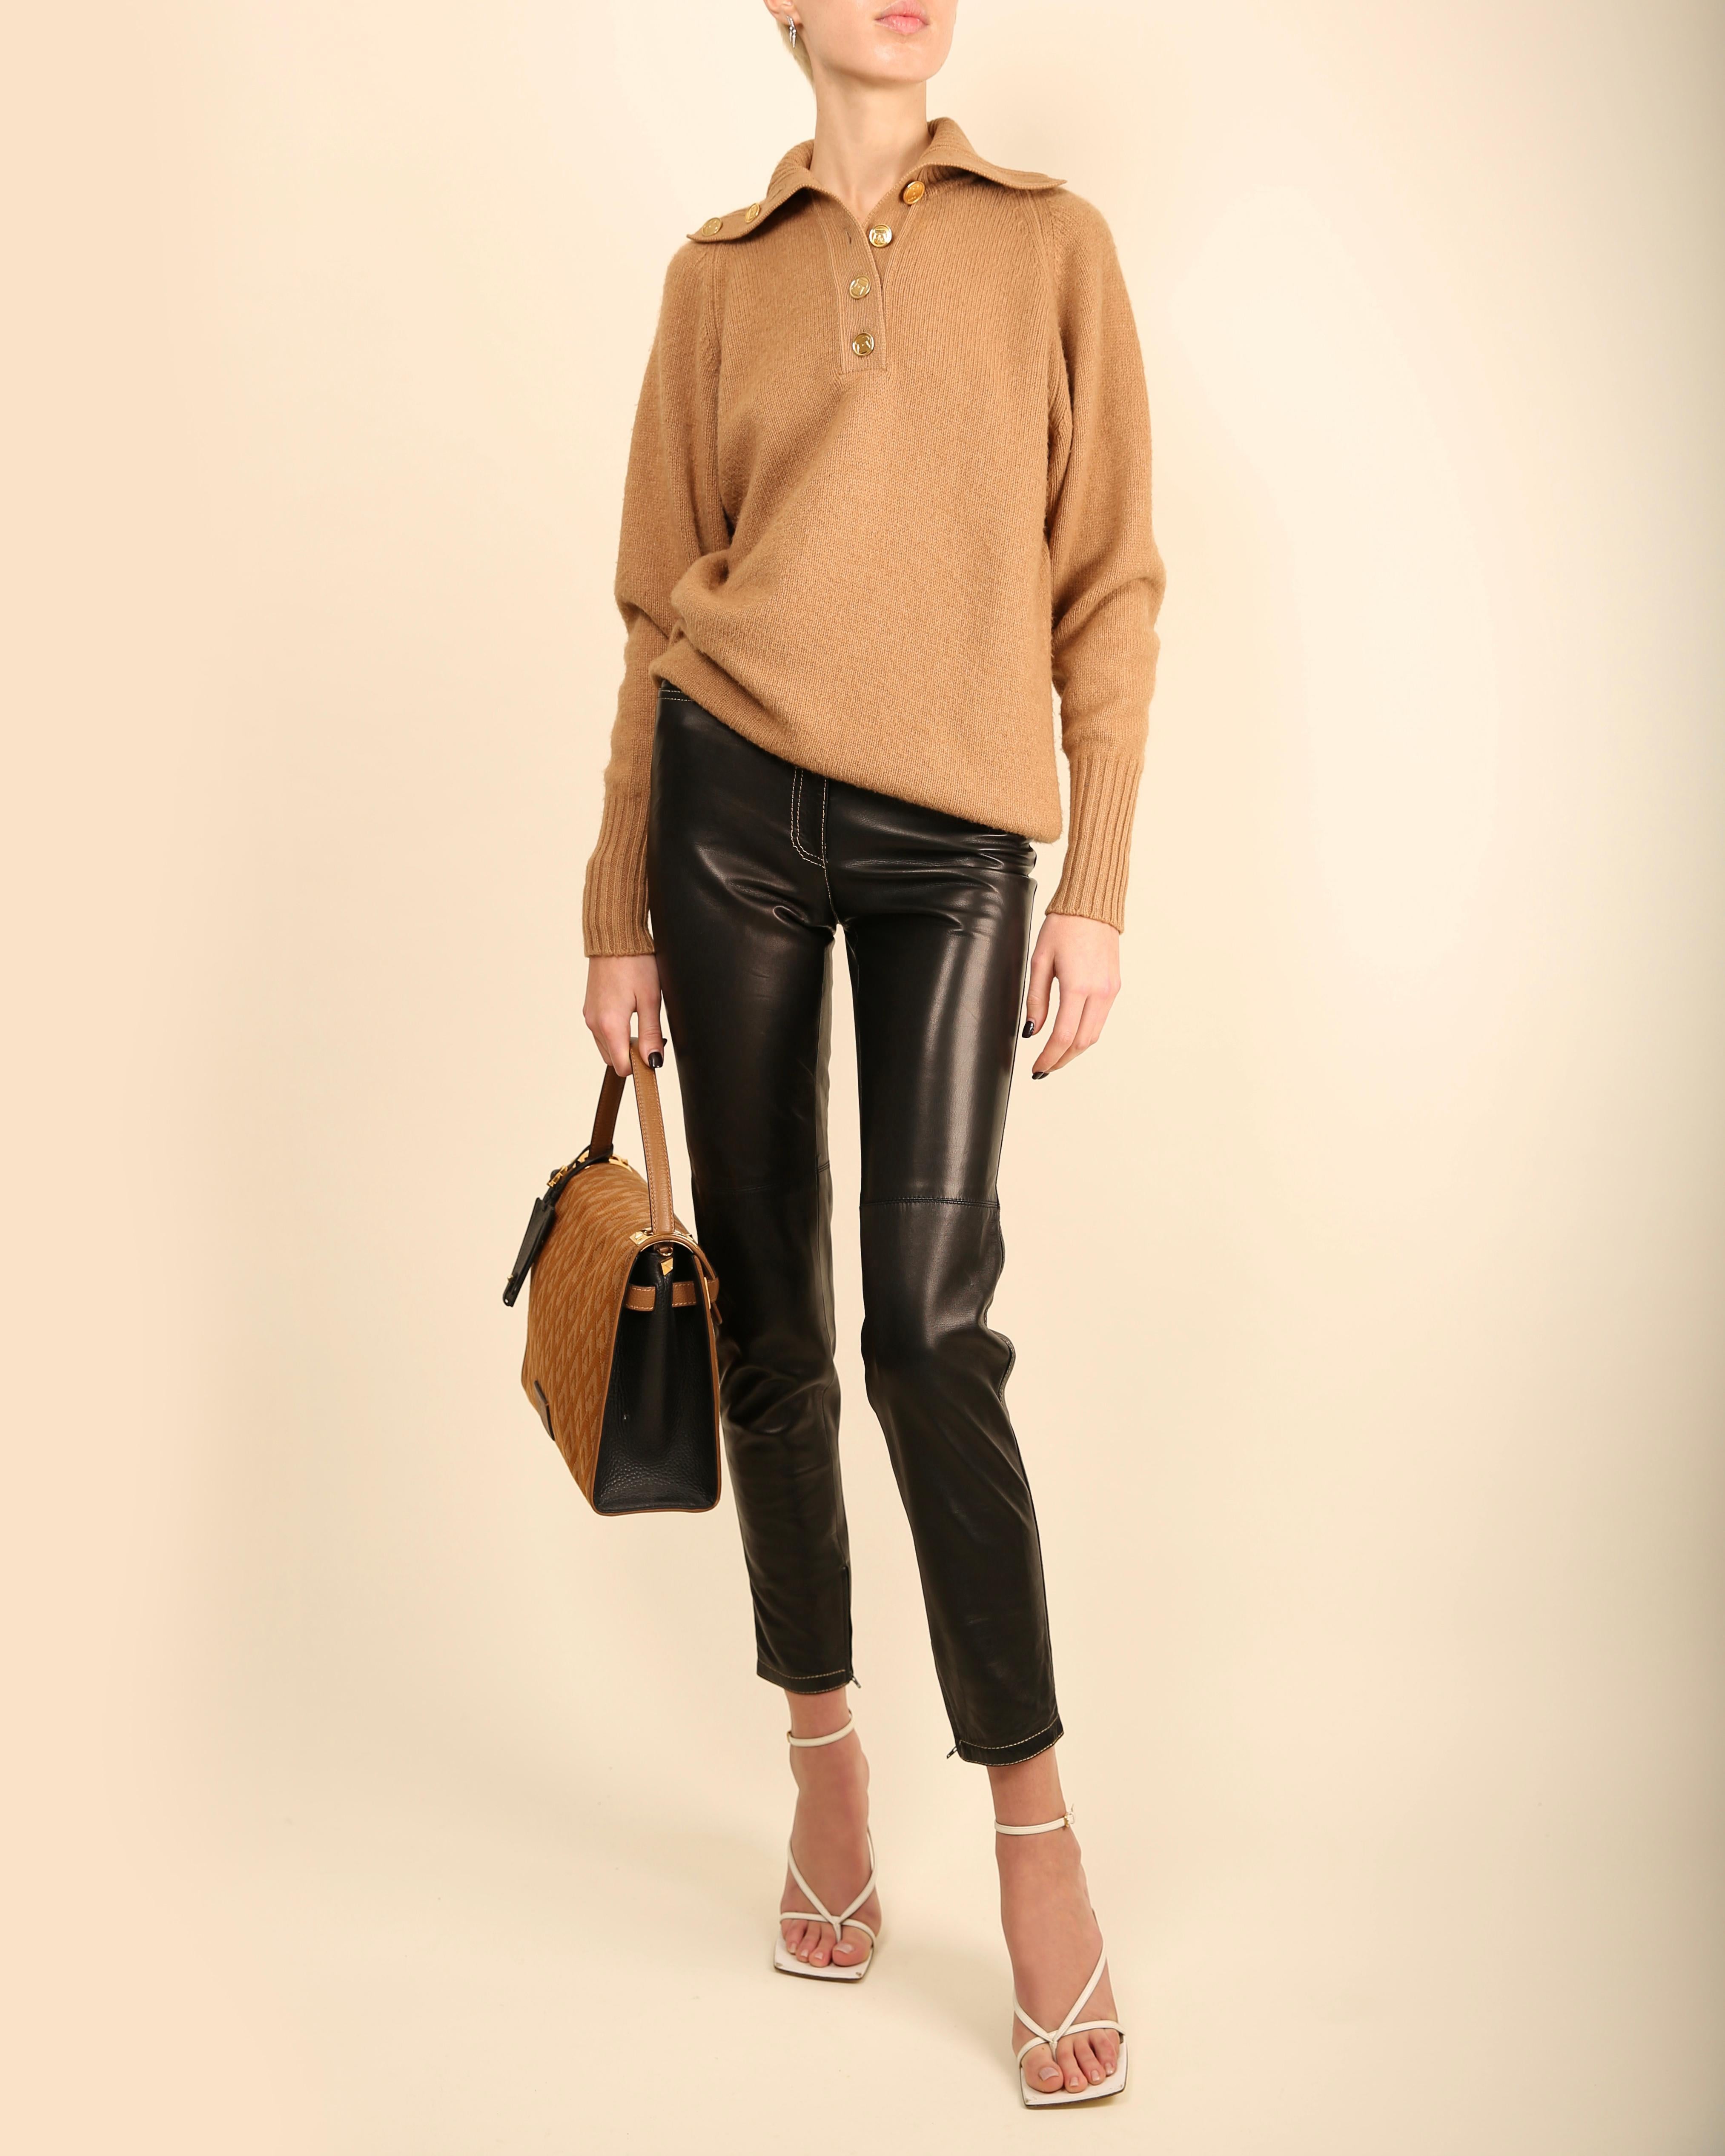 Chanel vtg tan camel beige turtleneck gold logo button cashmere dress sweater  For Sale 8